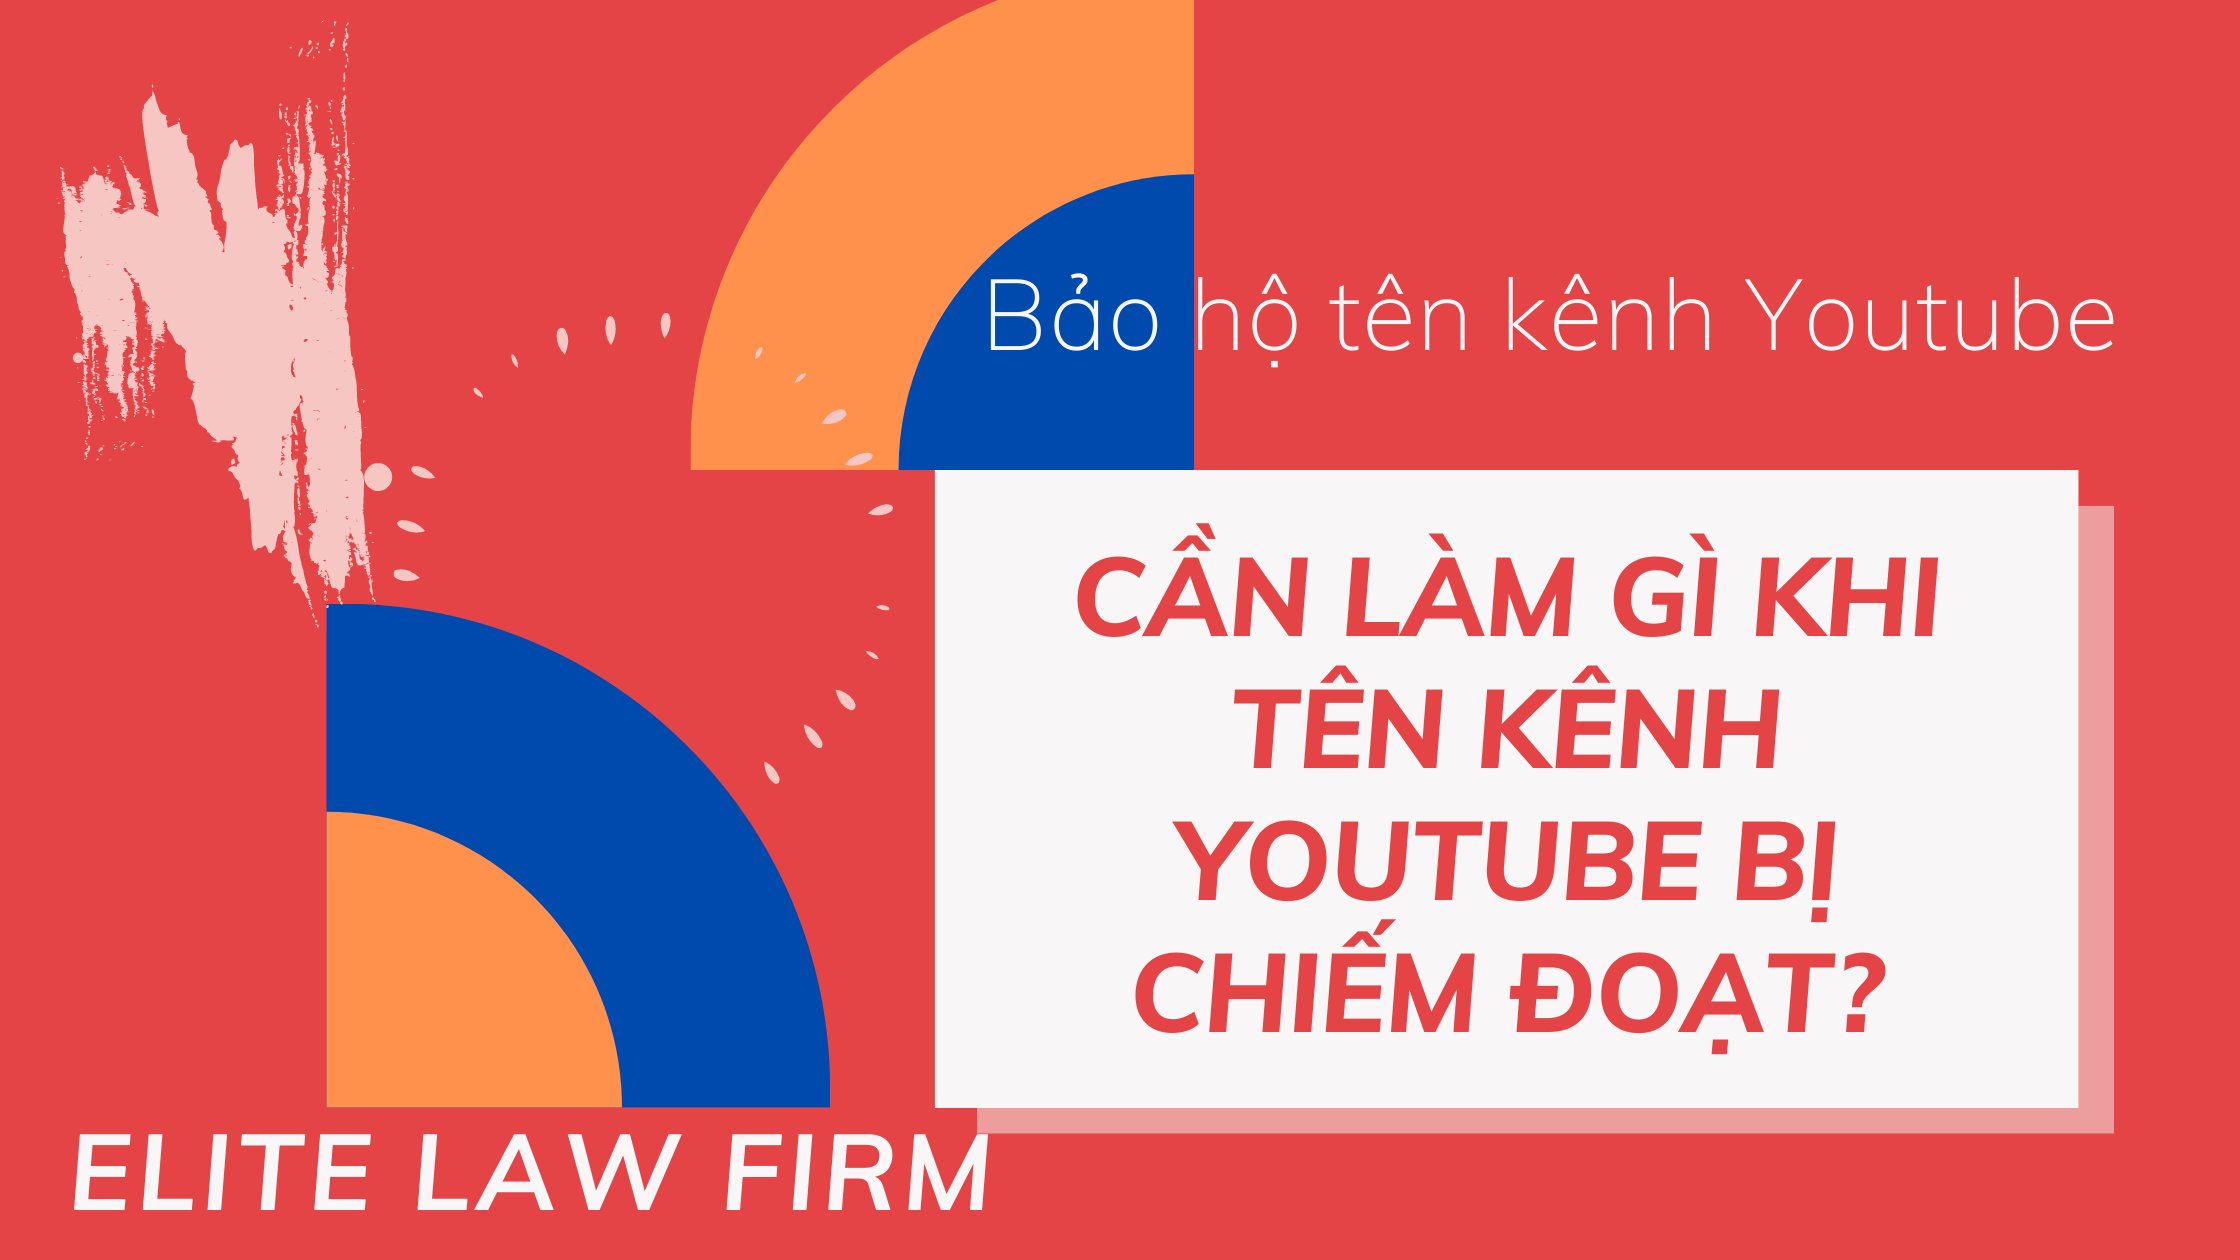 Bạn cần làm gì khi tên kênh Youtube bị chiếm đoạt? by ELITE LAW FIRM